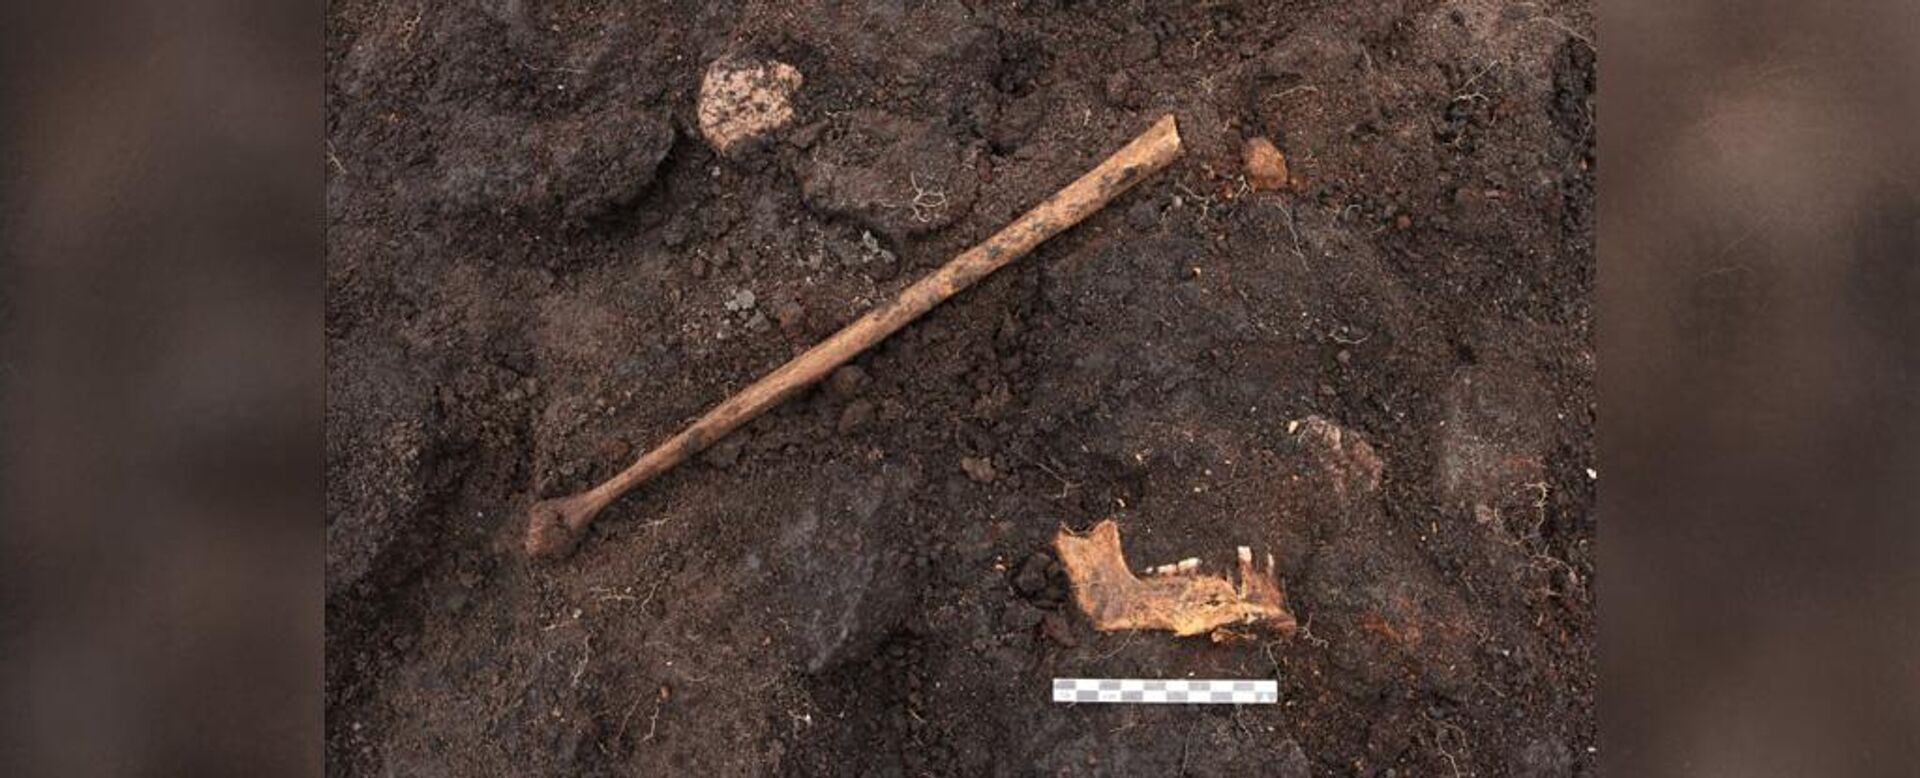 Huesos de una pierna humana, la pelvis y la mandíbula inferior de la momia del pantano - Sputnik Mundo, 1920, 25.12.2022